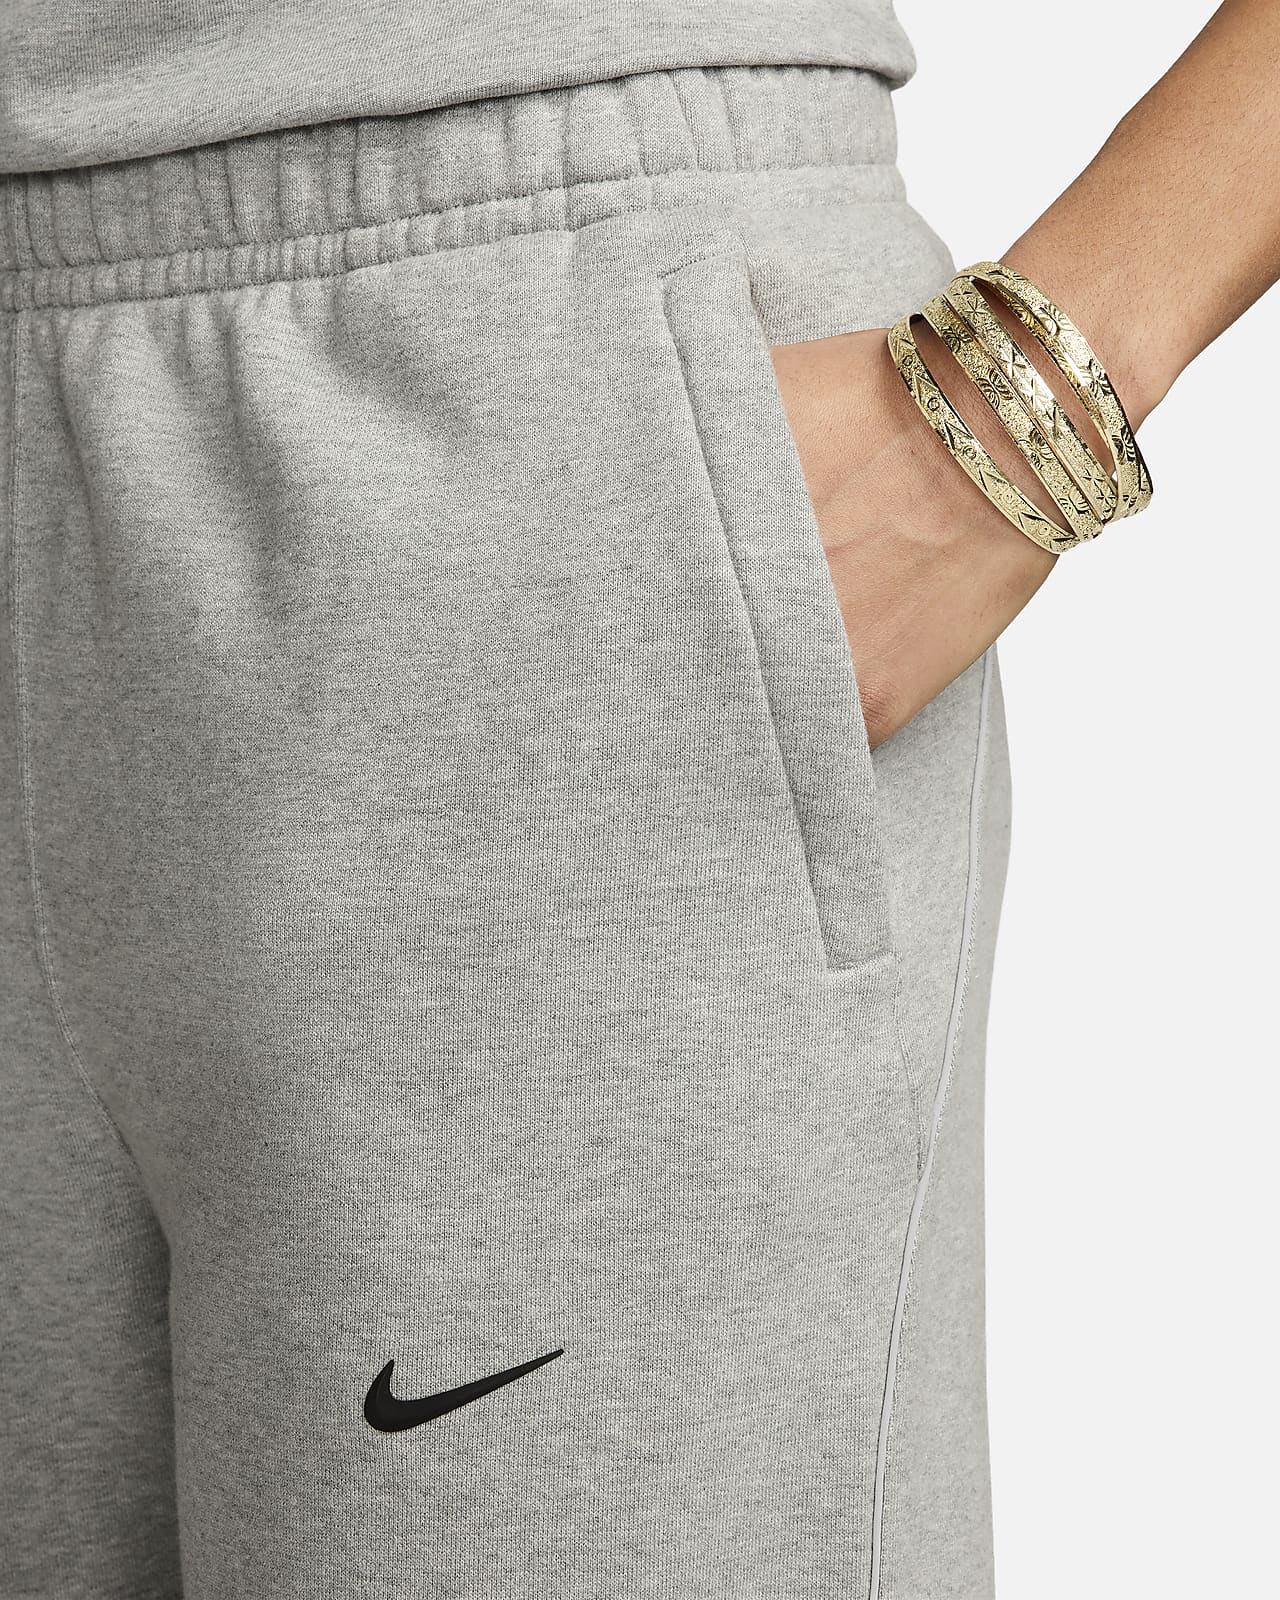 NOCTA Men's Fleece Trousers. Nike MY